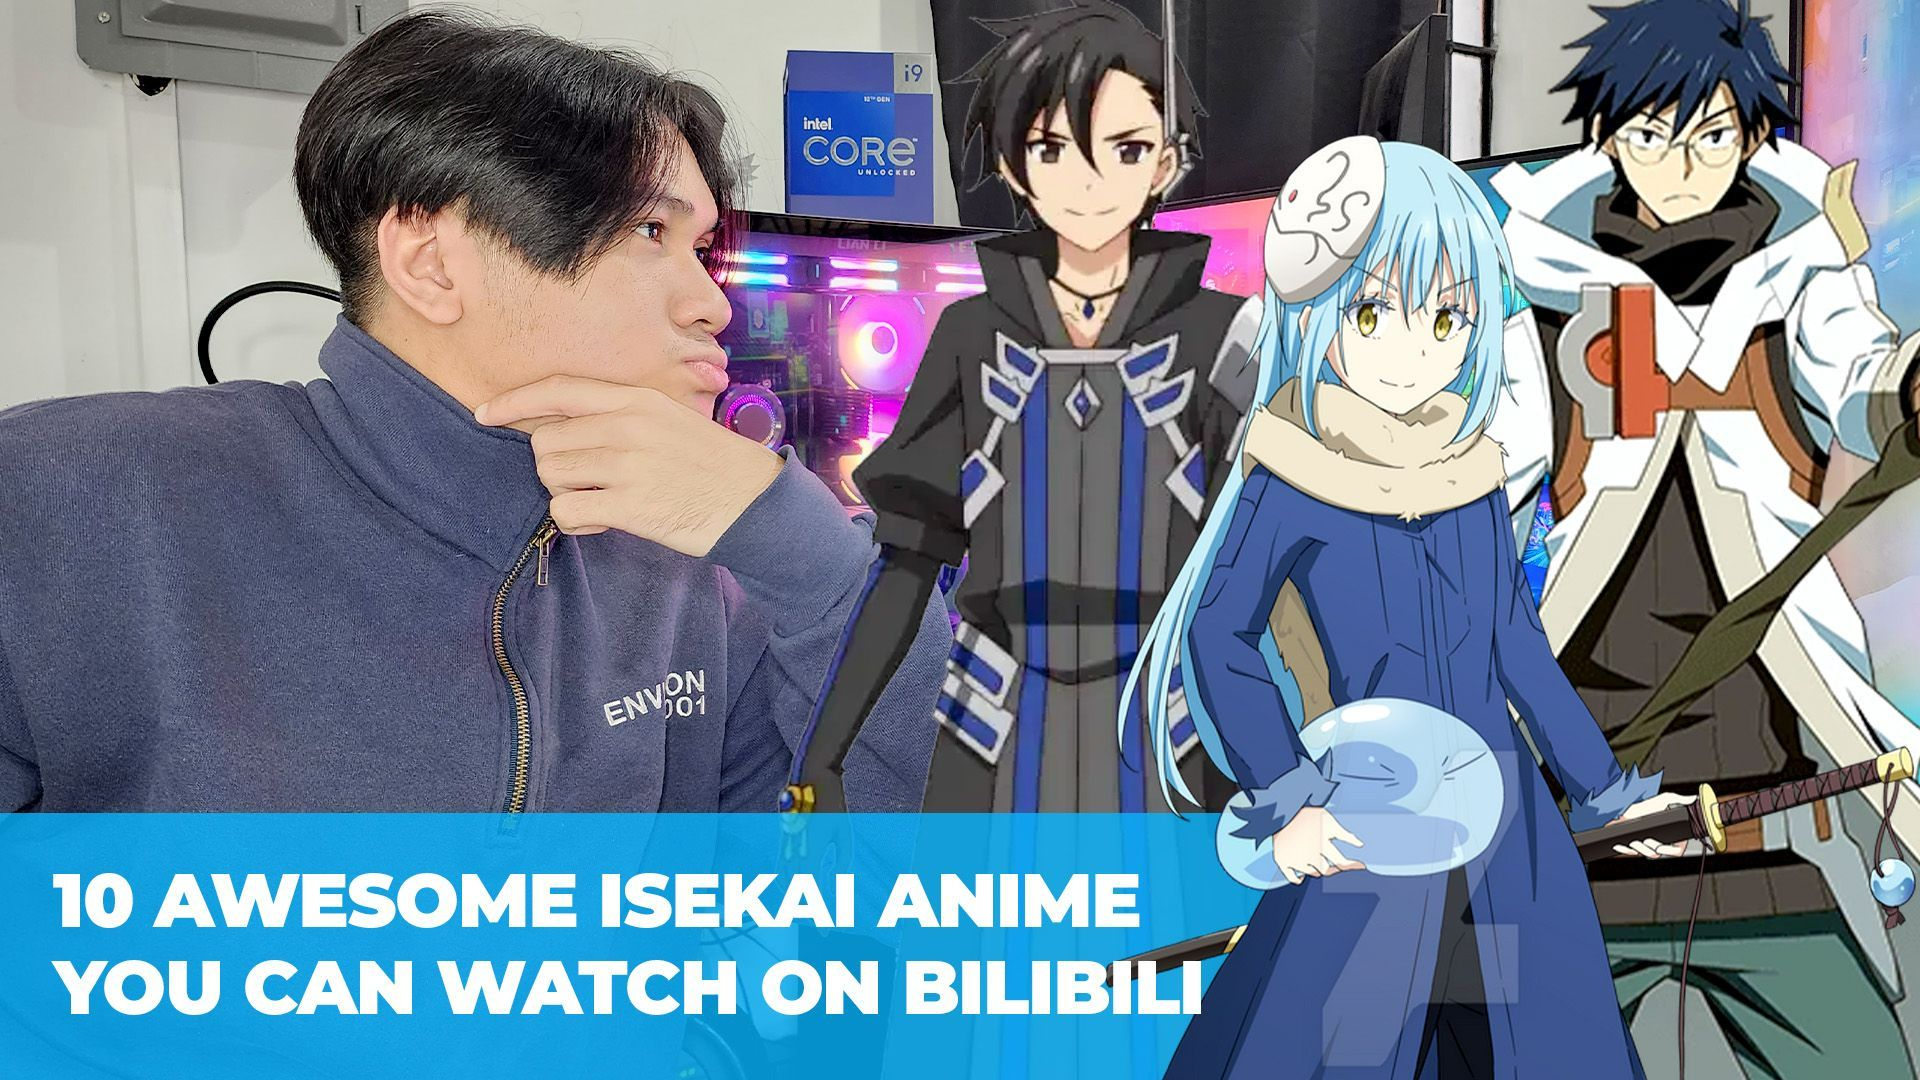 Awesome Isekai Anime You Can Watch on Bilibili - Bilibili